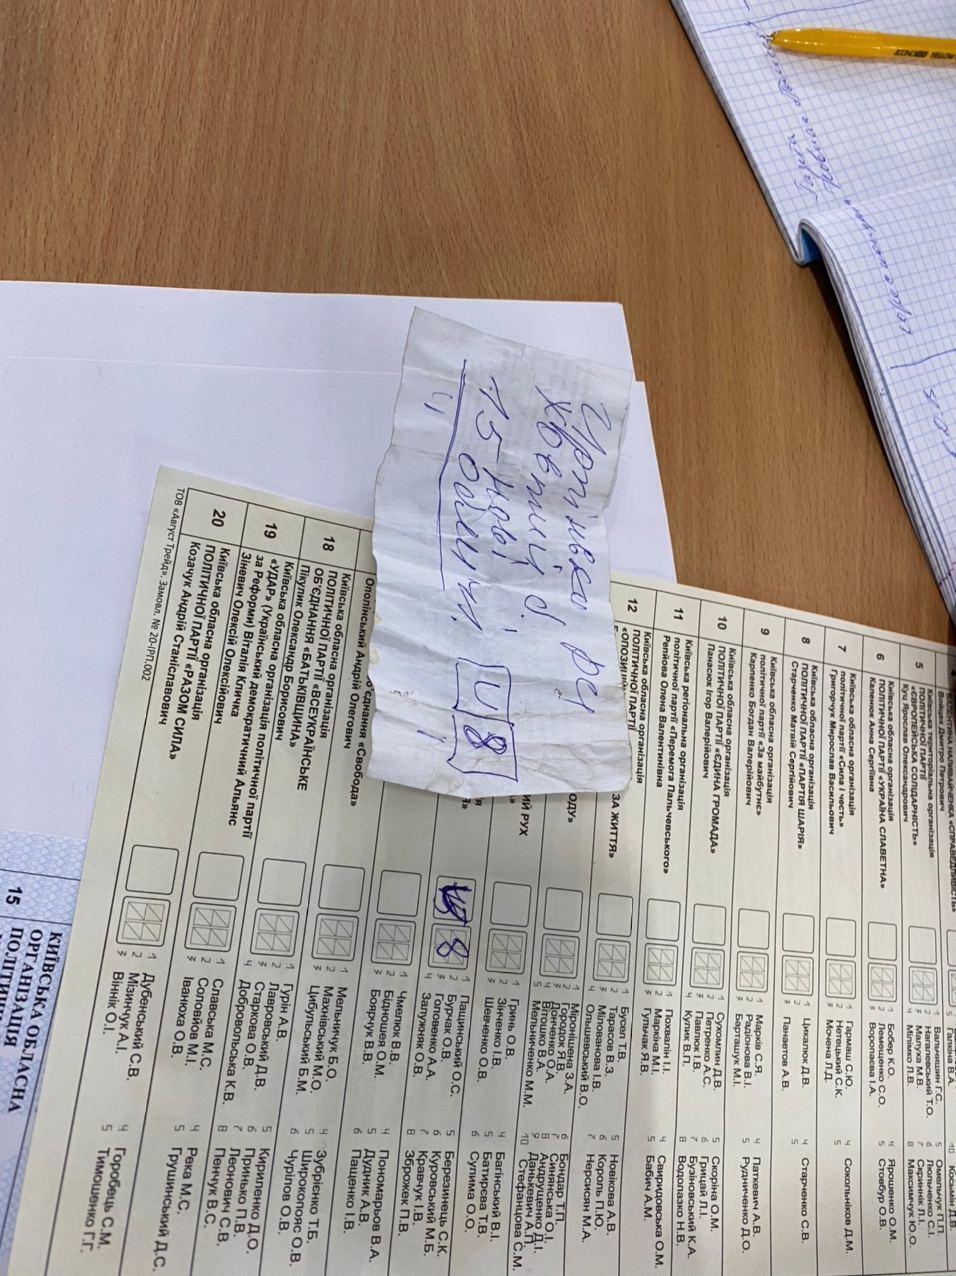 Порушення на місцевих виборах в Україні: що відбувалося на виборчих дільницях. Фото і відео